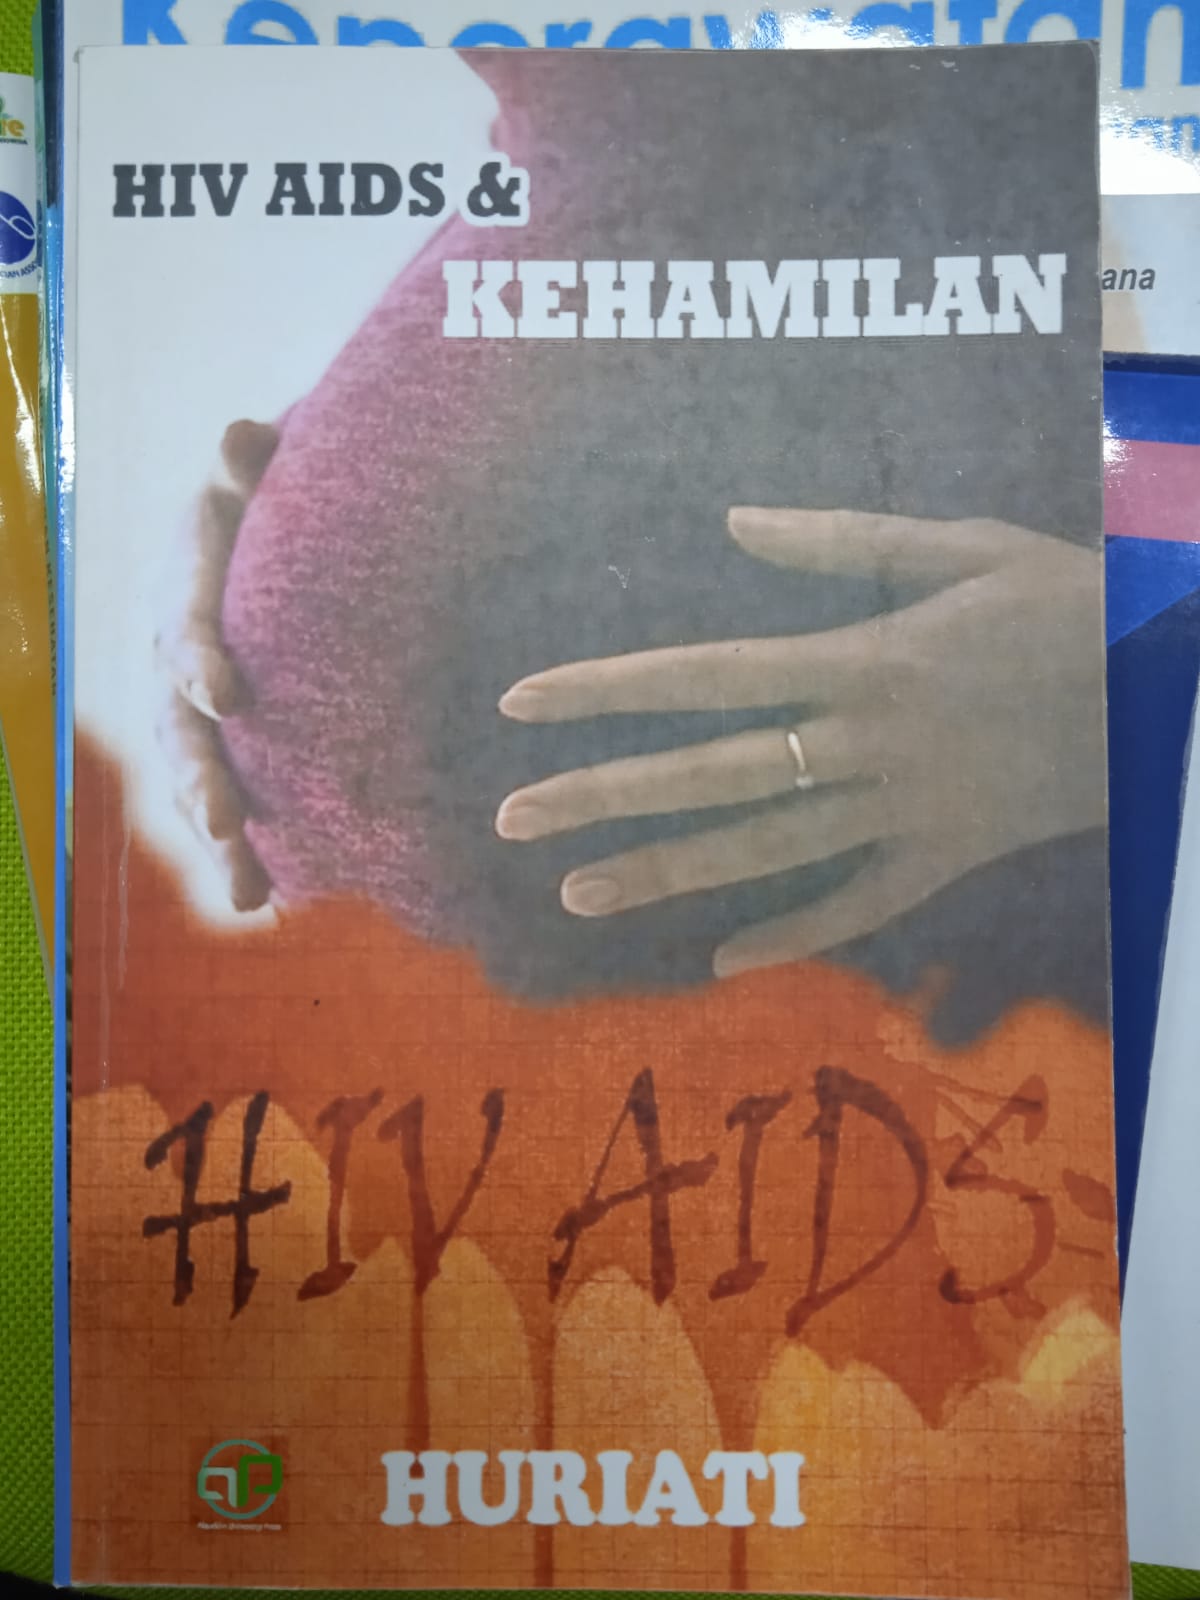 HIV AIDS & KEHAMILAN